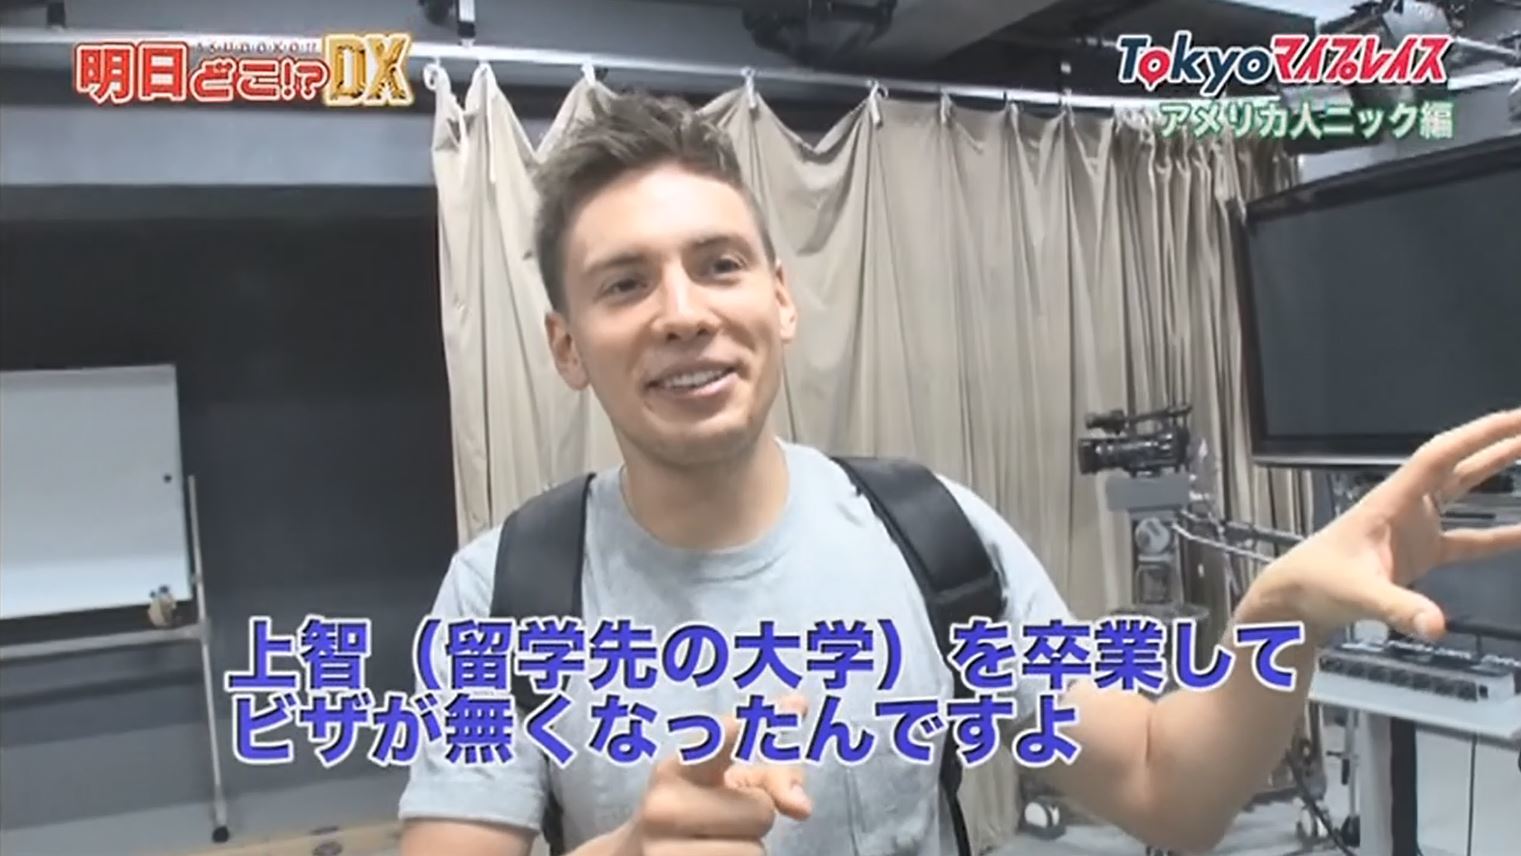 東京に関わるさまざまな外国人の視点で東京の魅力を再発見するTOKYO MX（地上波9ch）の国際情報バラエティ番組「明日どこ!? DX」（毎週日曜13:00～）。10月7日（日）放送の番組企画「TOKYOマイプレイス」では、お笑いコンビ・タイムボムのニックさんが登場。彼にとって“第2の故郷”となった東京の想い出の場所を巡りました。